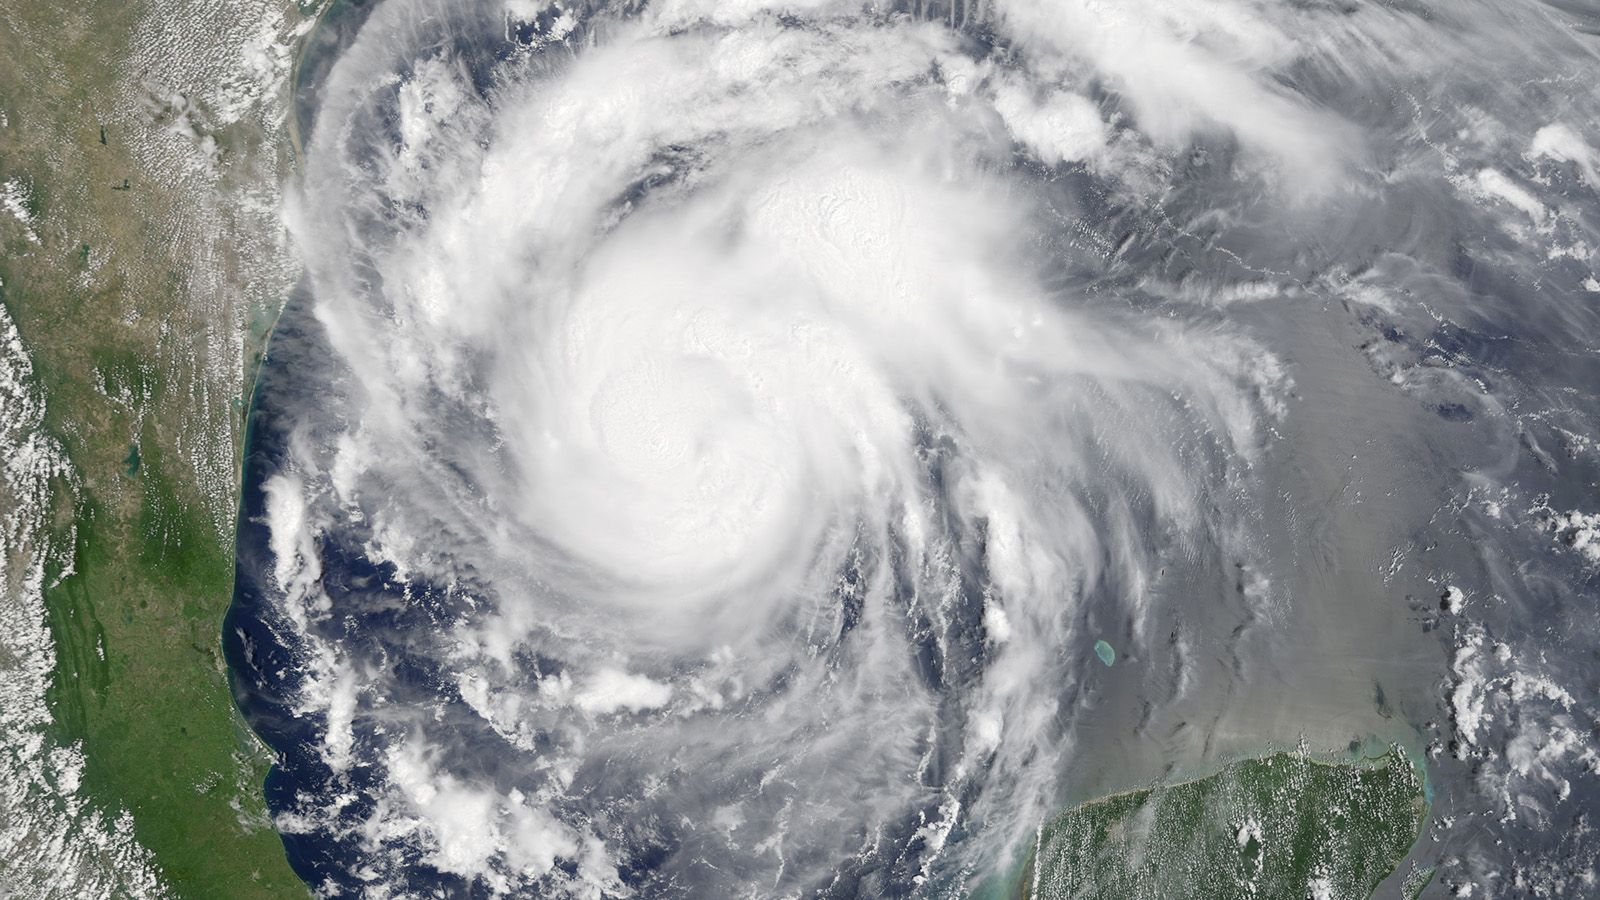 הוריקן הארווי במפרץ מקסיקו בדרכו לחופי טקסס (צילום: NASA via AP).